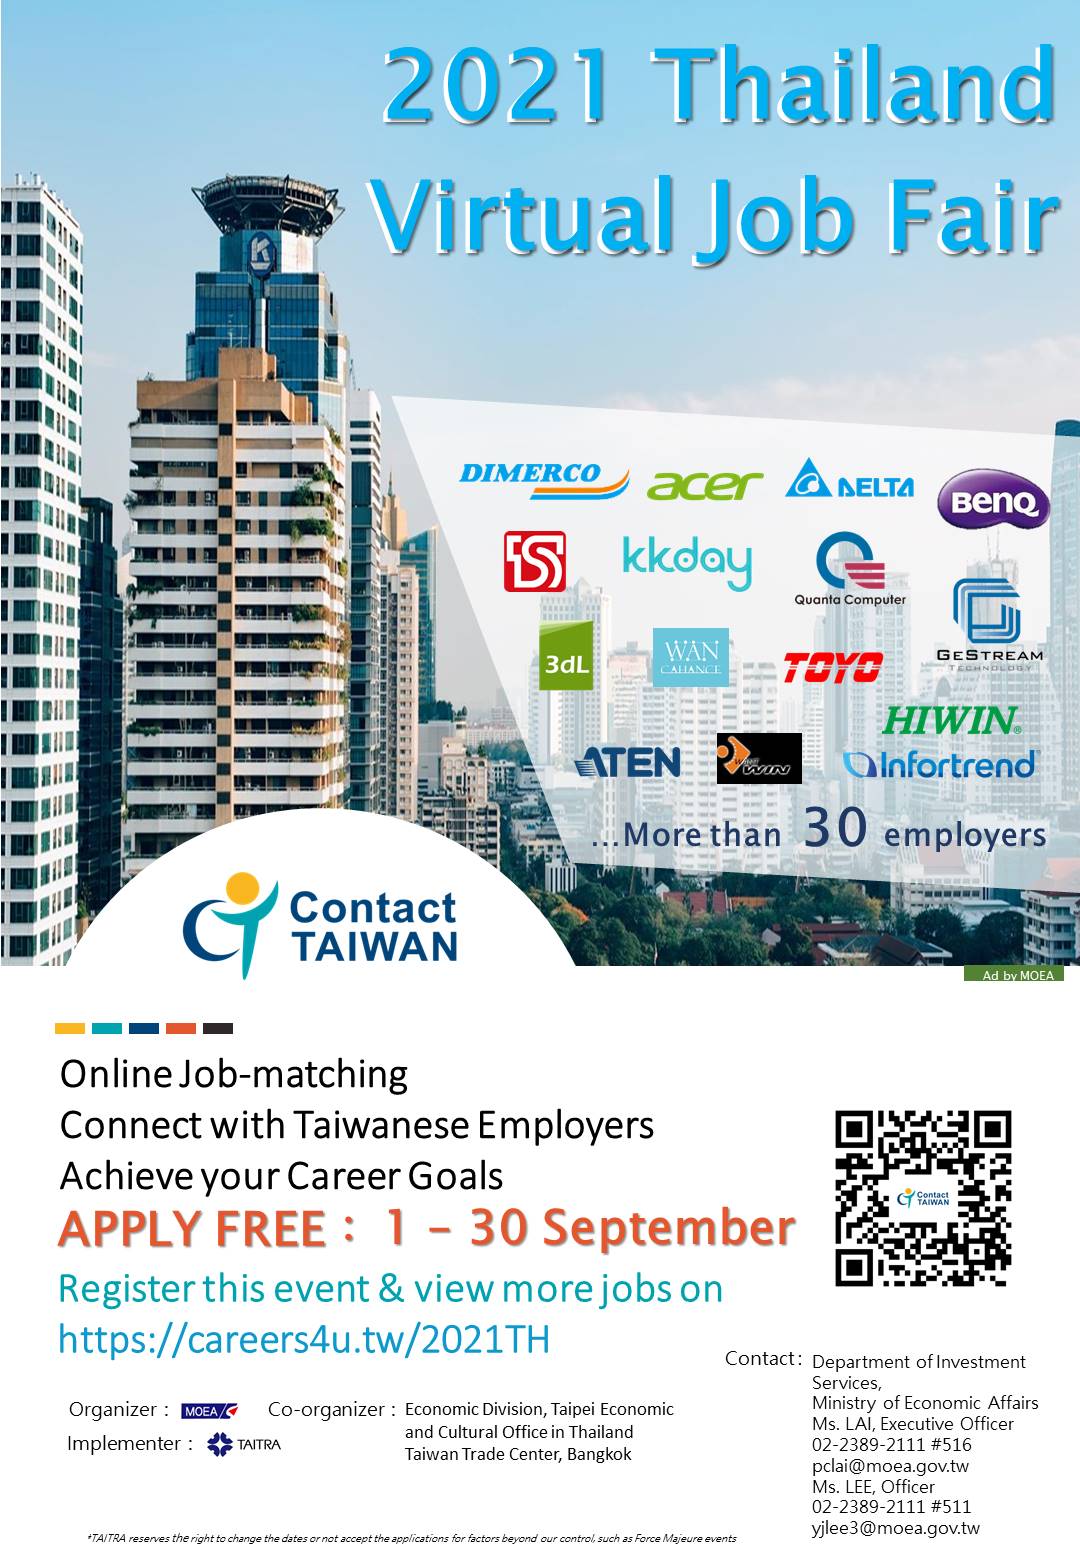 【18.8.2564】ประชาสัมพันธ์ 2021 Virtual Taiwan Job Fair in Thailand